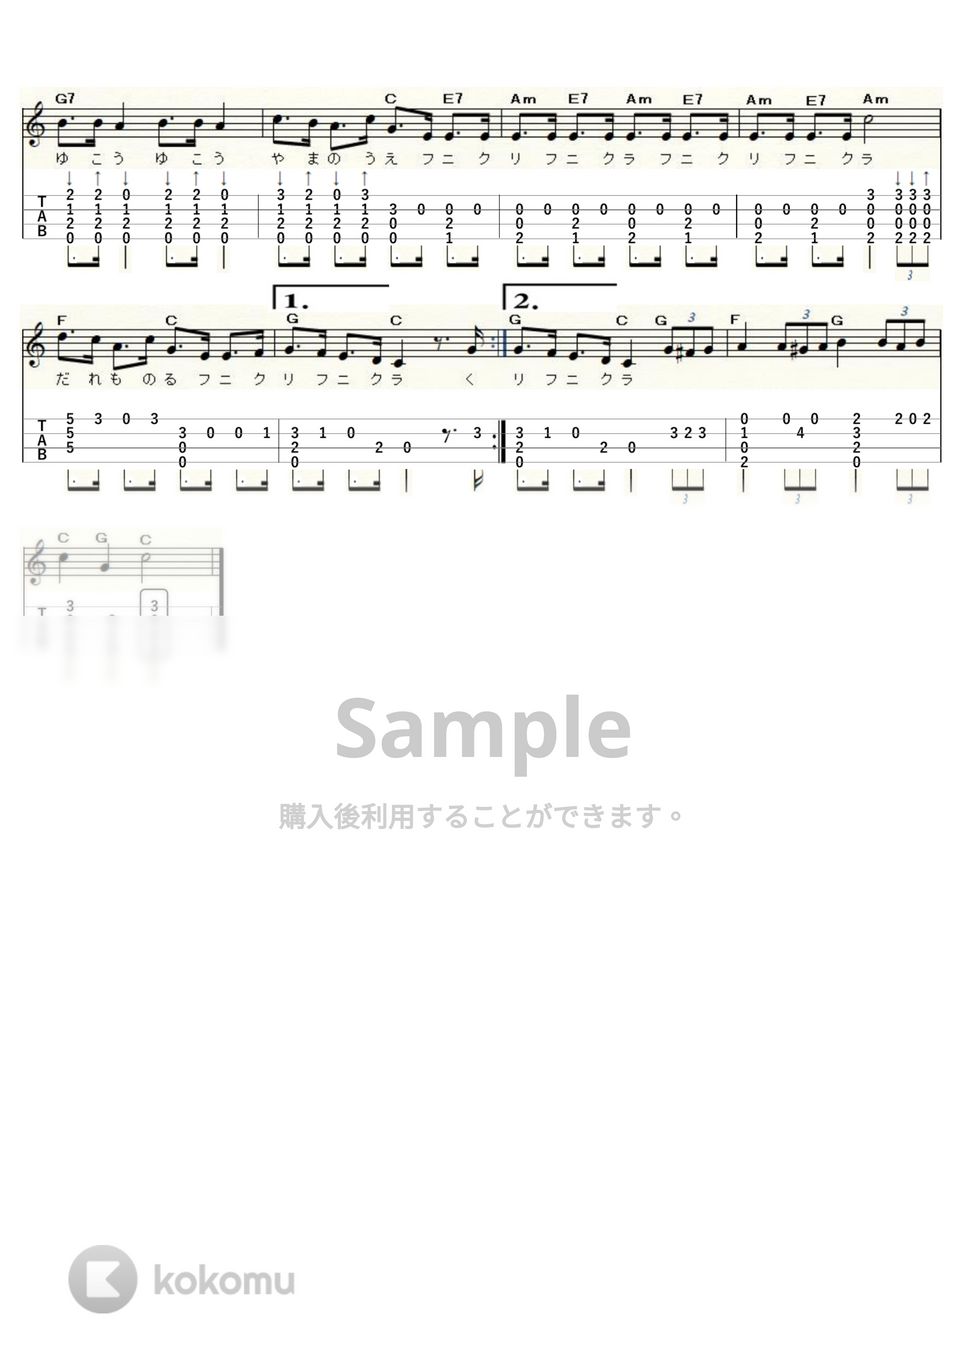 フニクリ・フニクラ (ｳｸﾚﾚｿﾛ / Low-G / 中級) by ukulelepapa